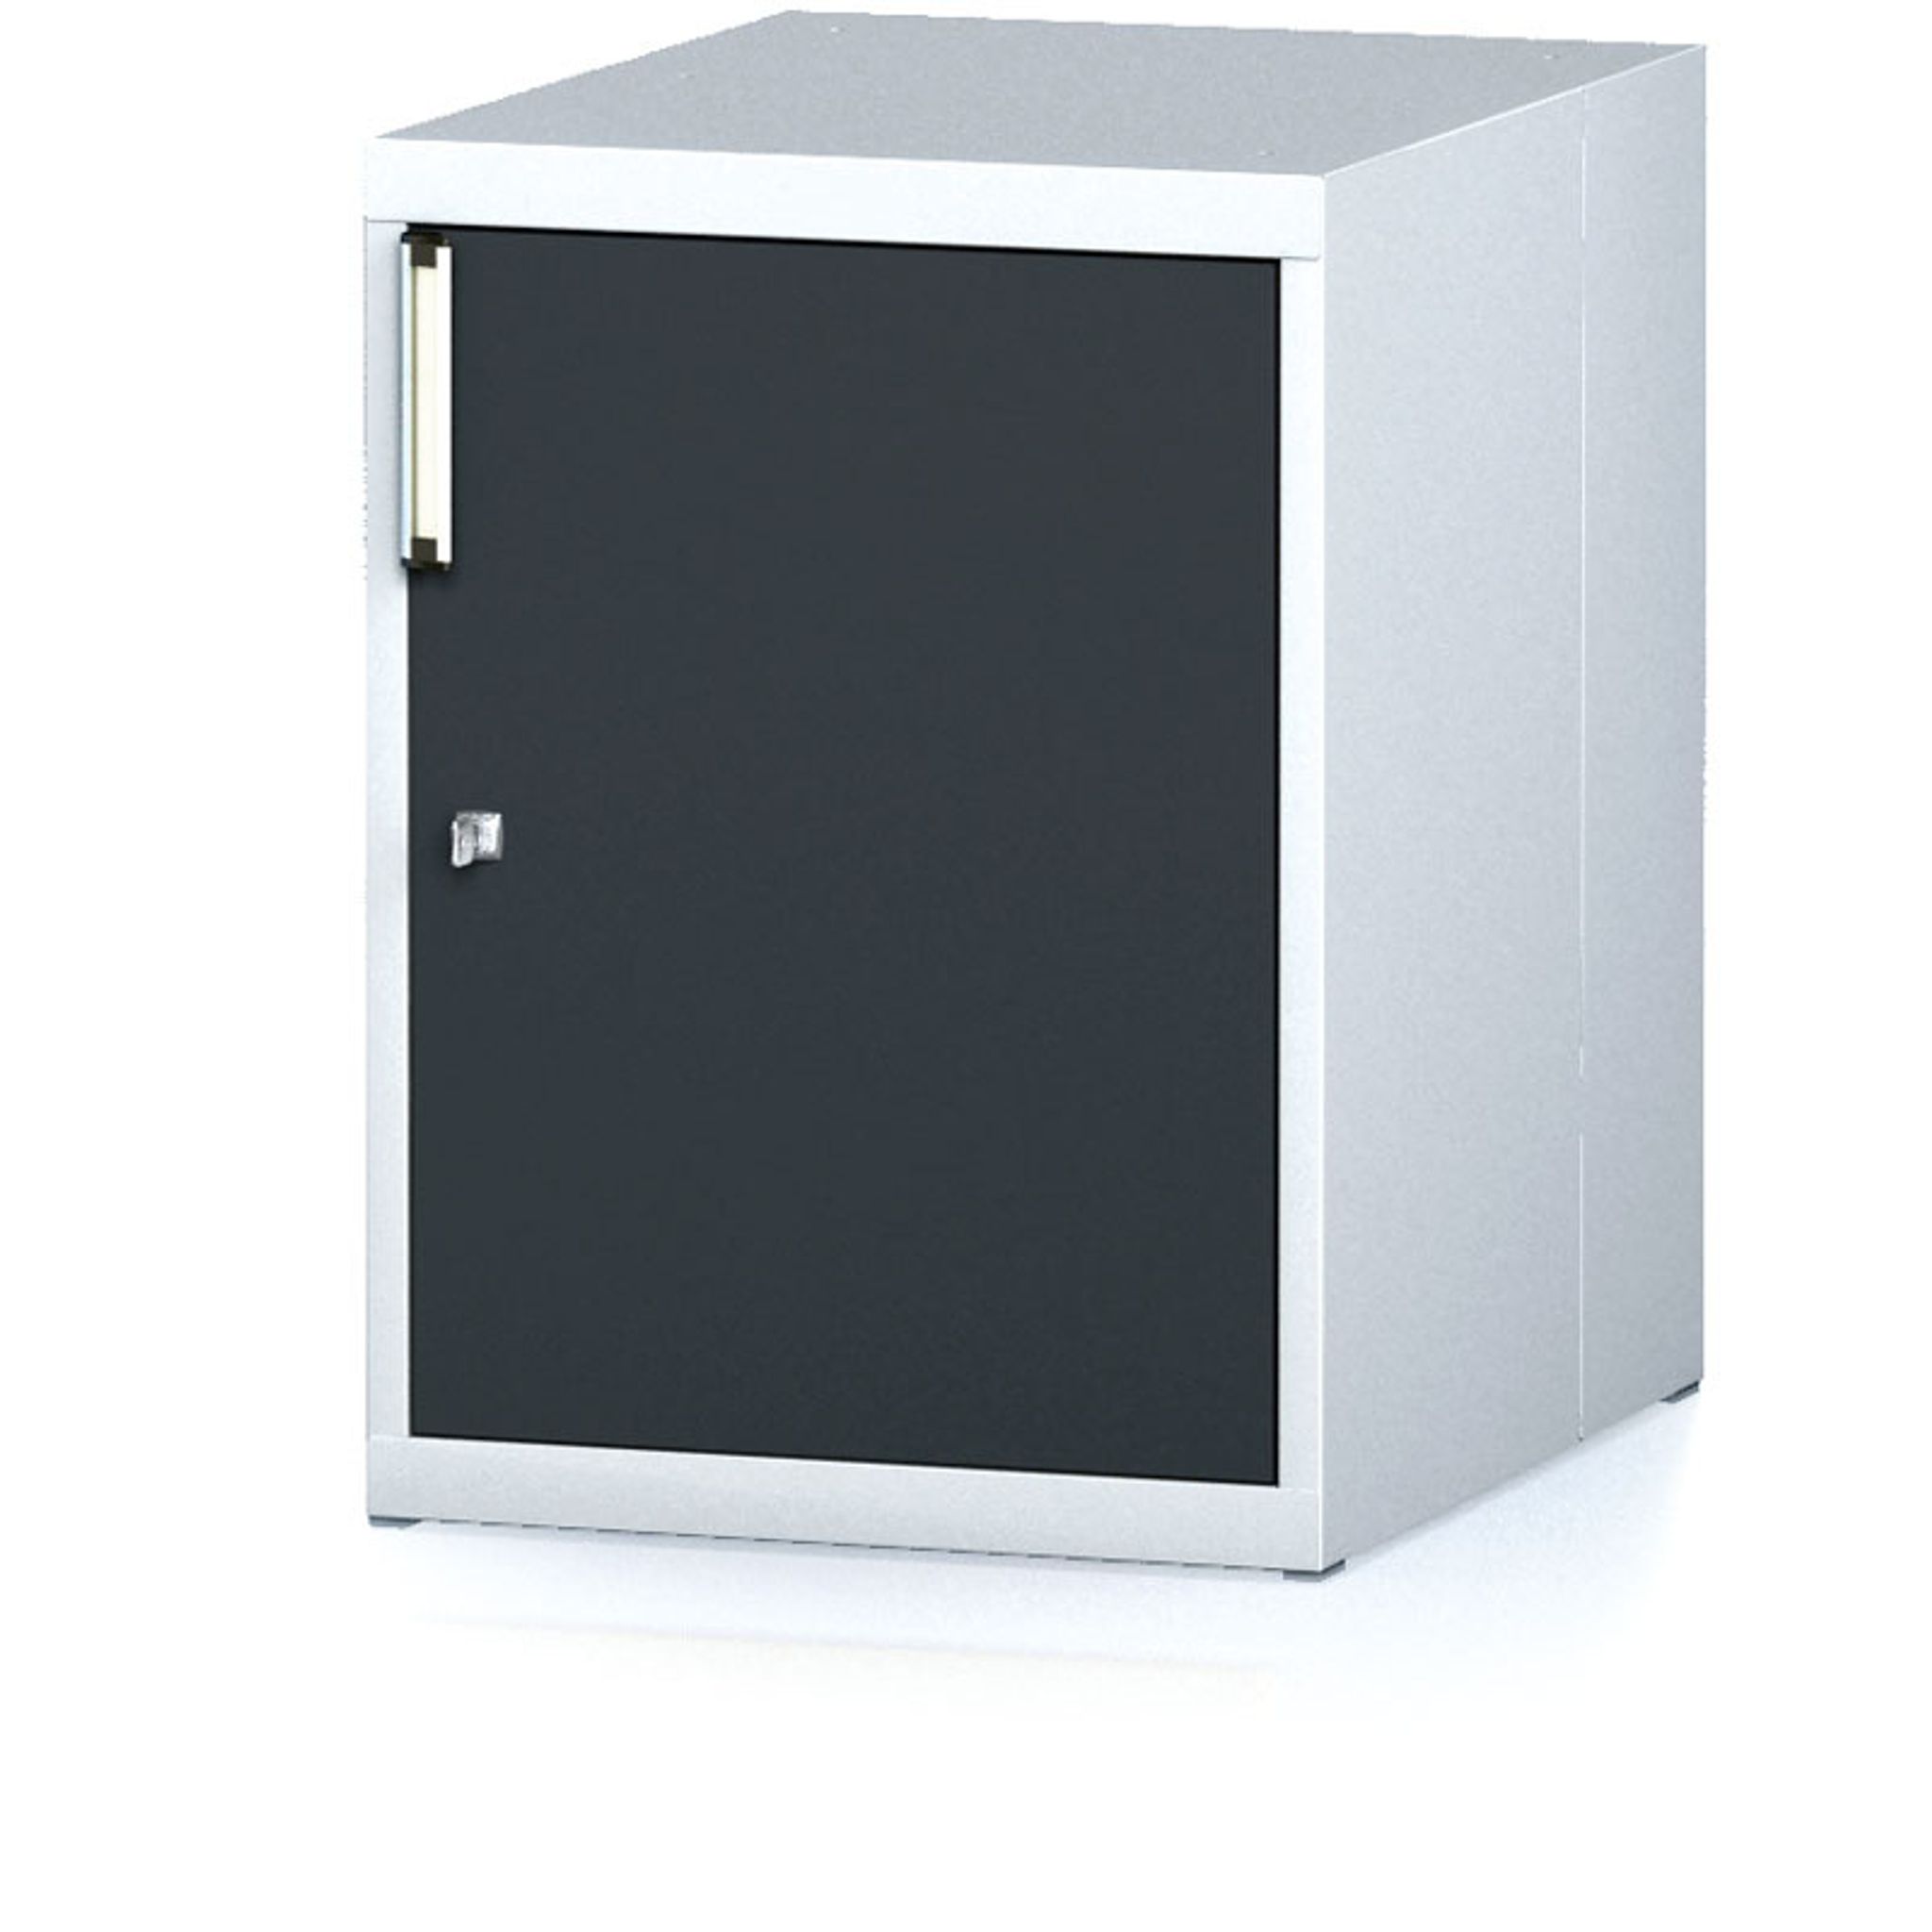 Závěsná dílenská skříňka na nářadí k pracovním stolům MECHANIC, 480 x 600 x 662 mm, antracitové dveře